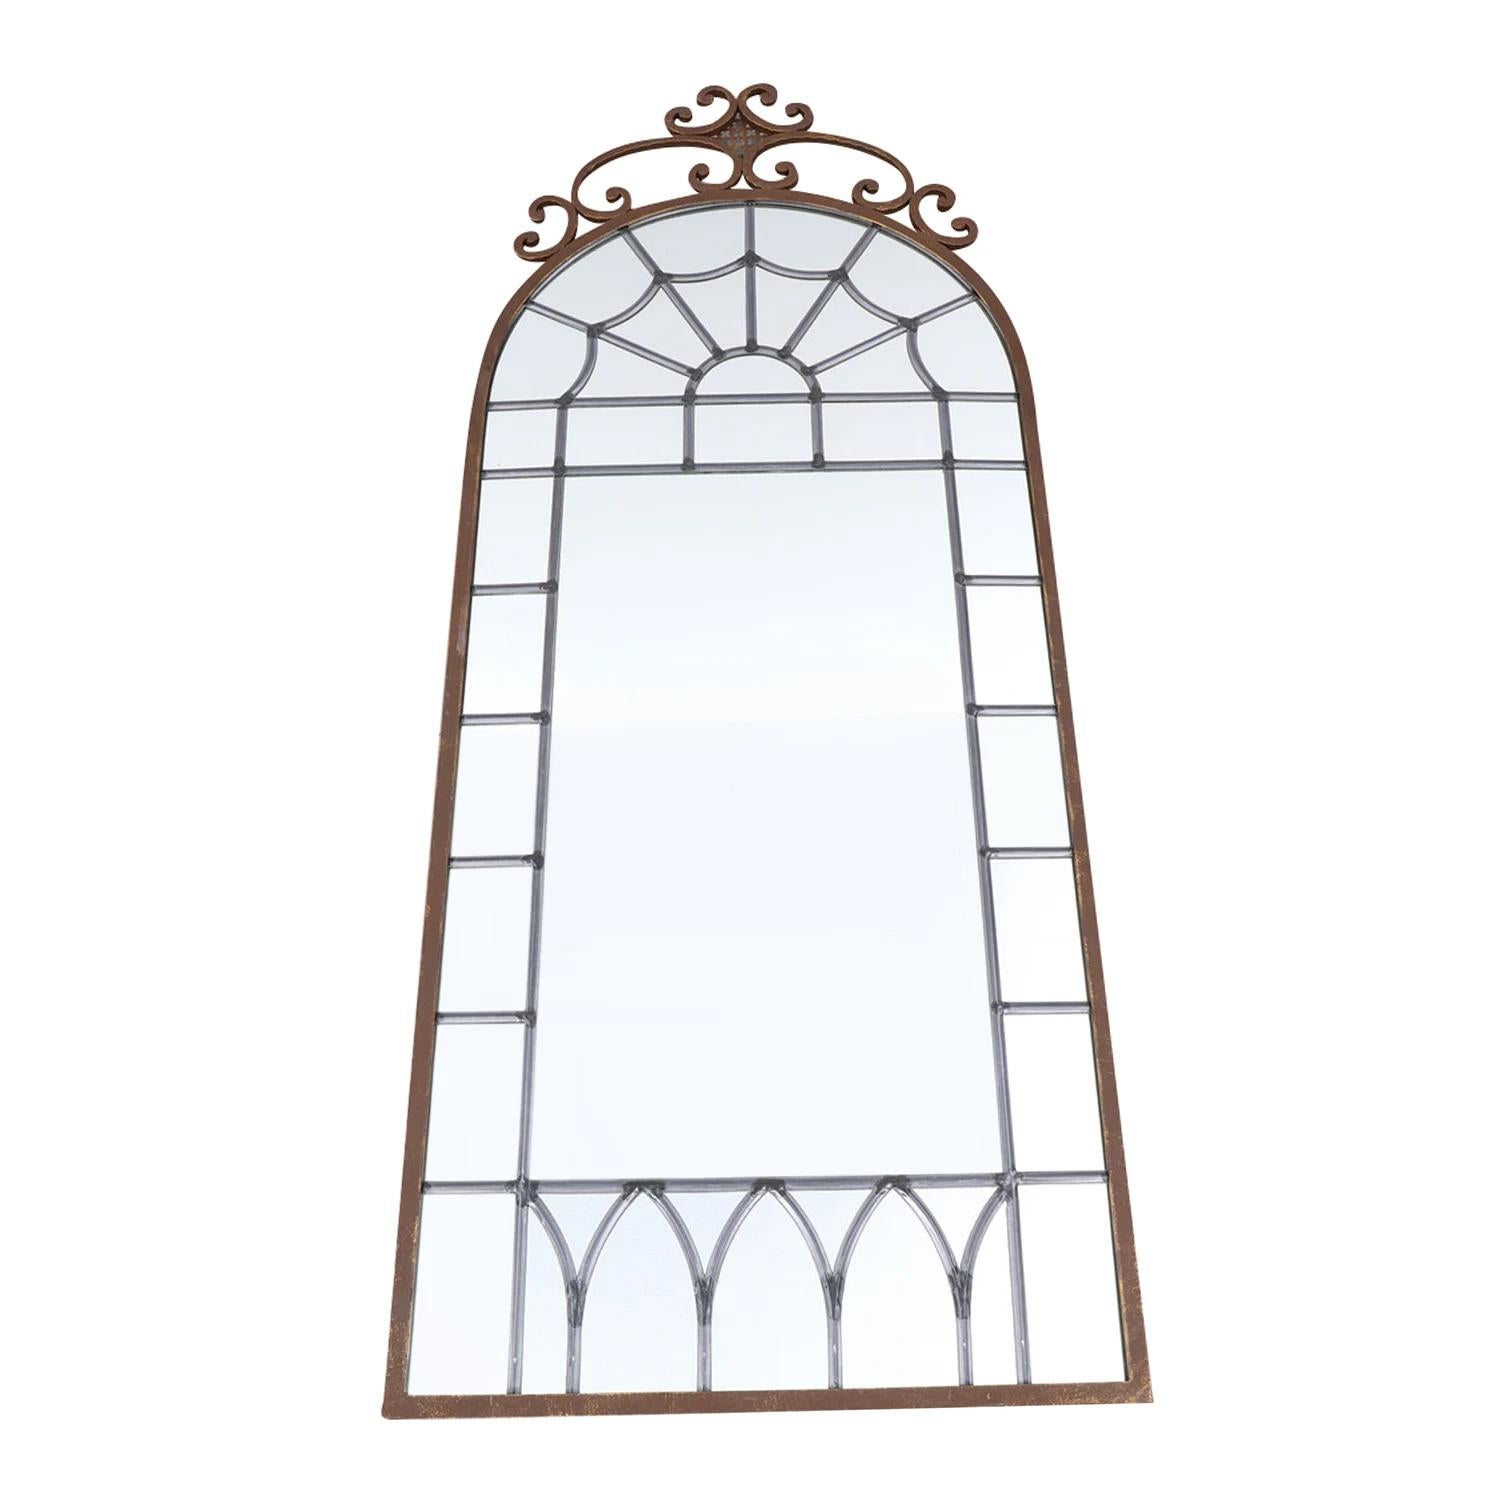 Ancienne paire de miroirs muraux français avec un sommet arqué, en métal travaillé à la main en bon état. Le grand miroir est constitué de son verre d'origine, miroité et plombé, souligné par une décoration florale détaillée. Les pièces du décor